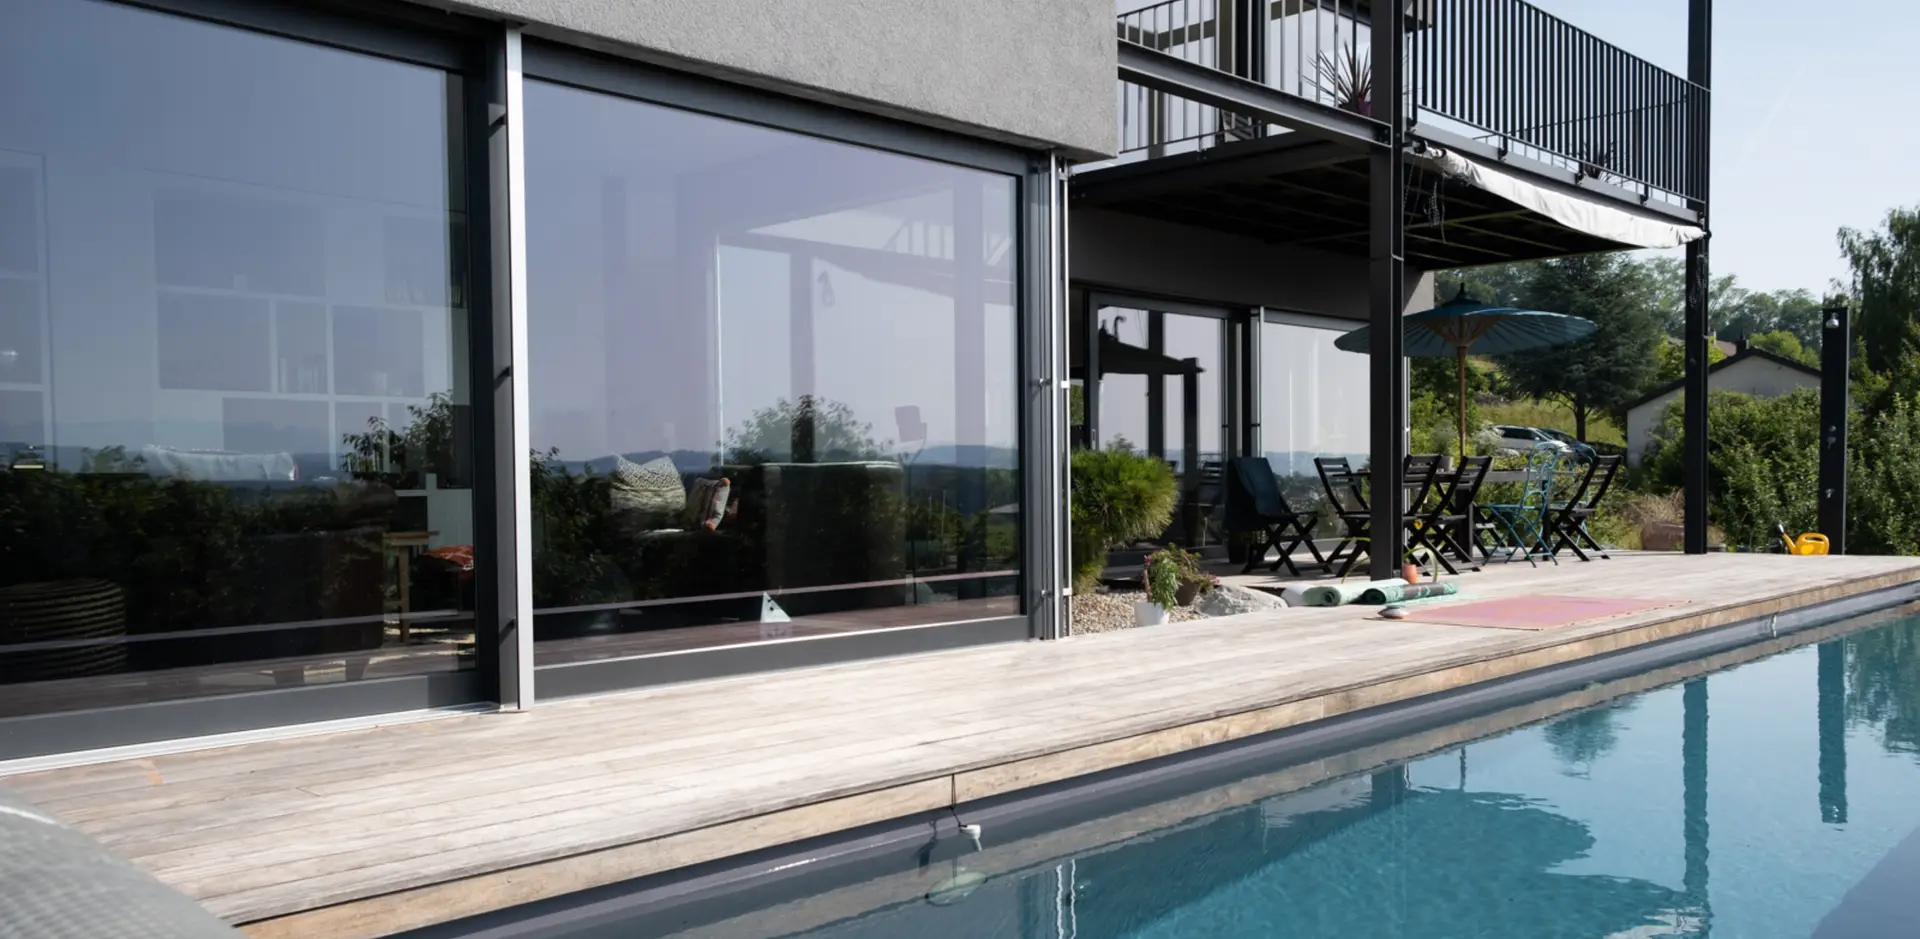 Terrasse et baies vitrées d'une maison moderne avec piscine.